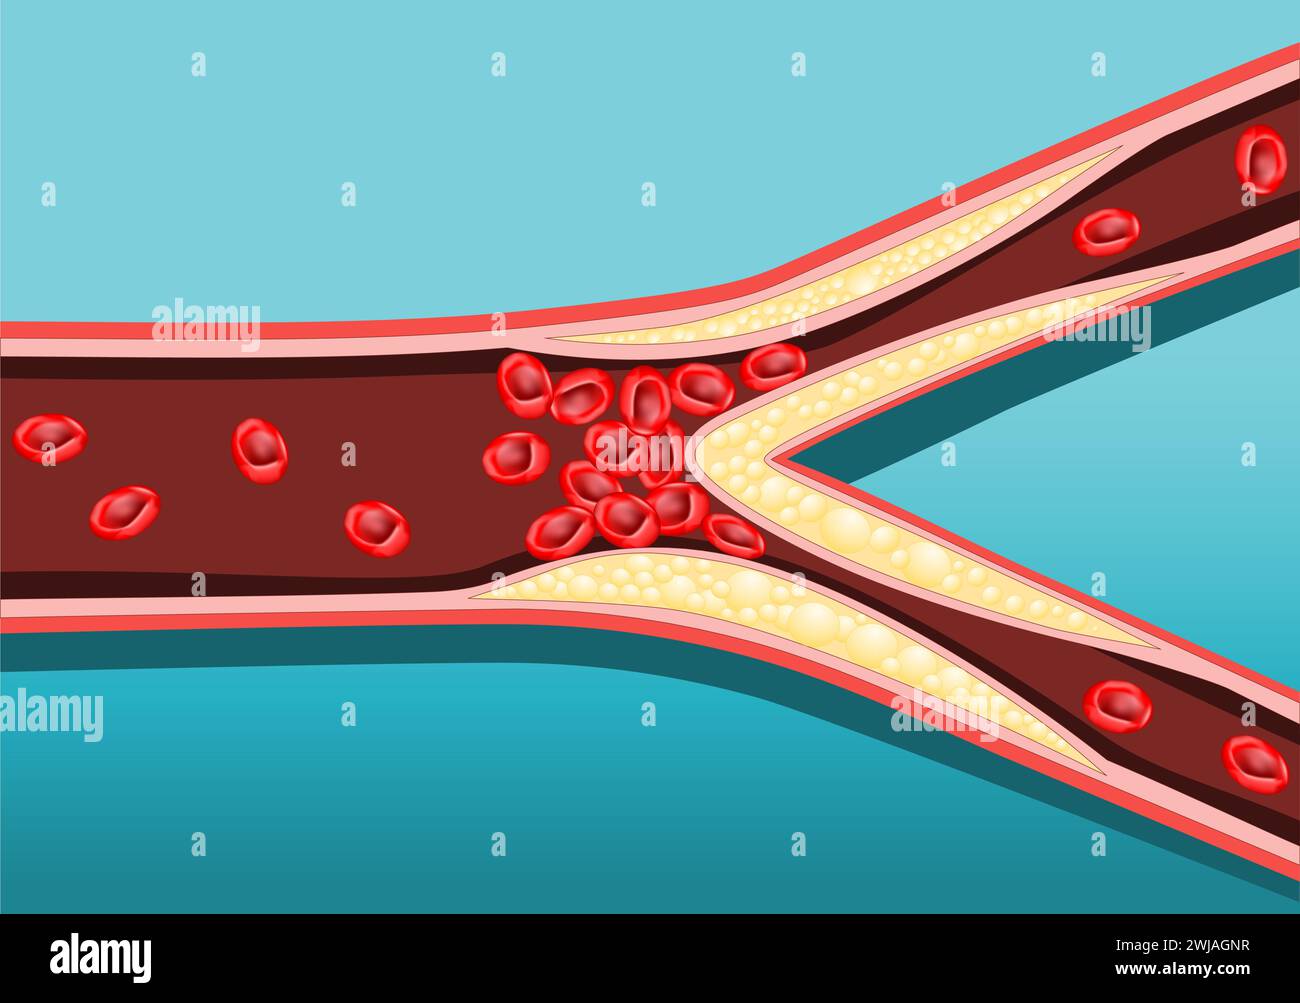 Aterosclerosi. La parete dell'arteria si ispessisce a causa dell'accumulo di calcio, grasso e colesterolo. Riduce l'elasticità dell'arteria. Vettore Illustrazione Vettoriale